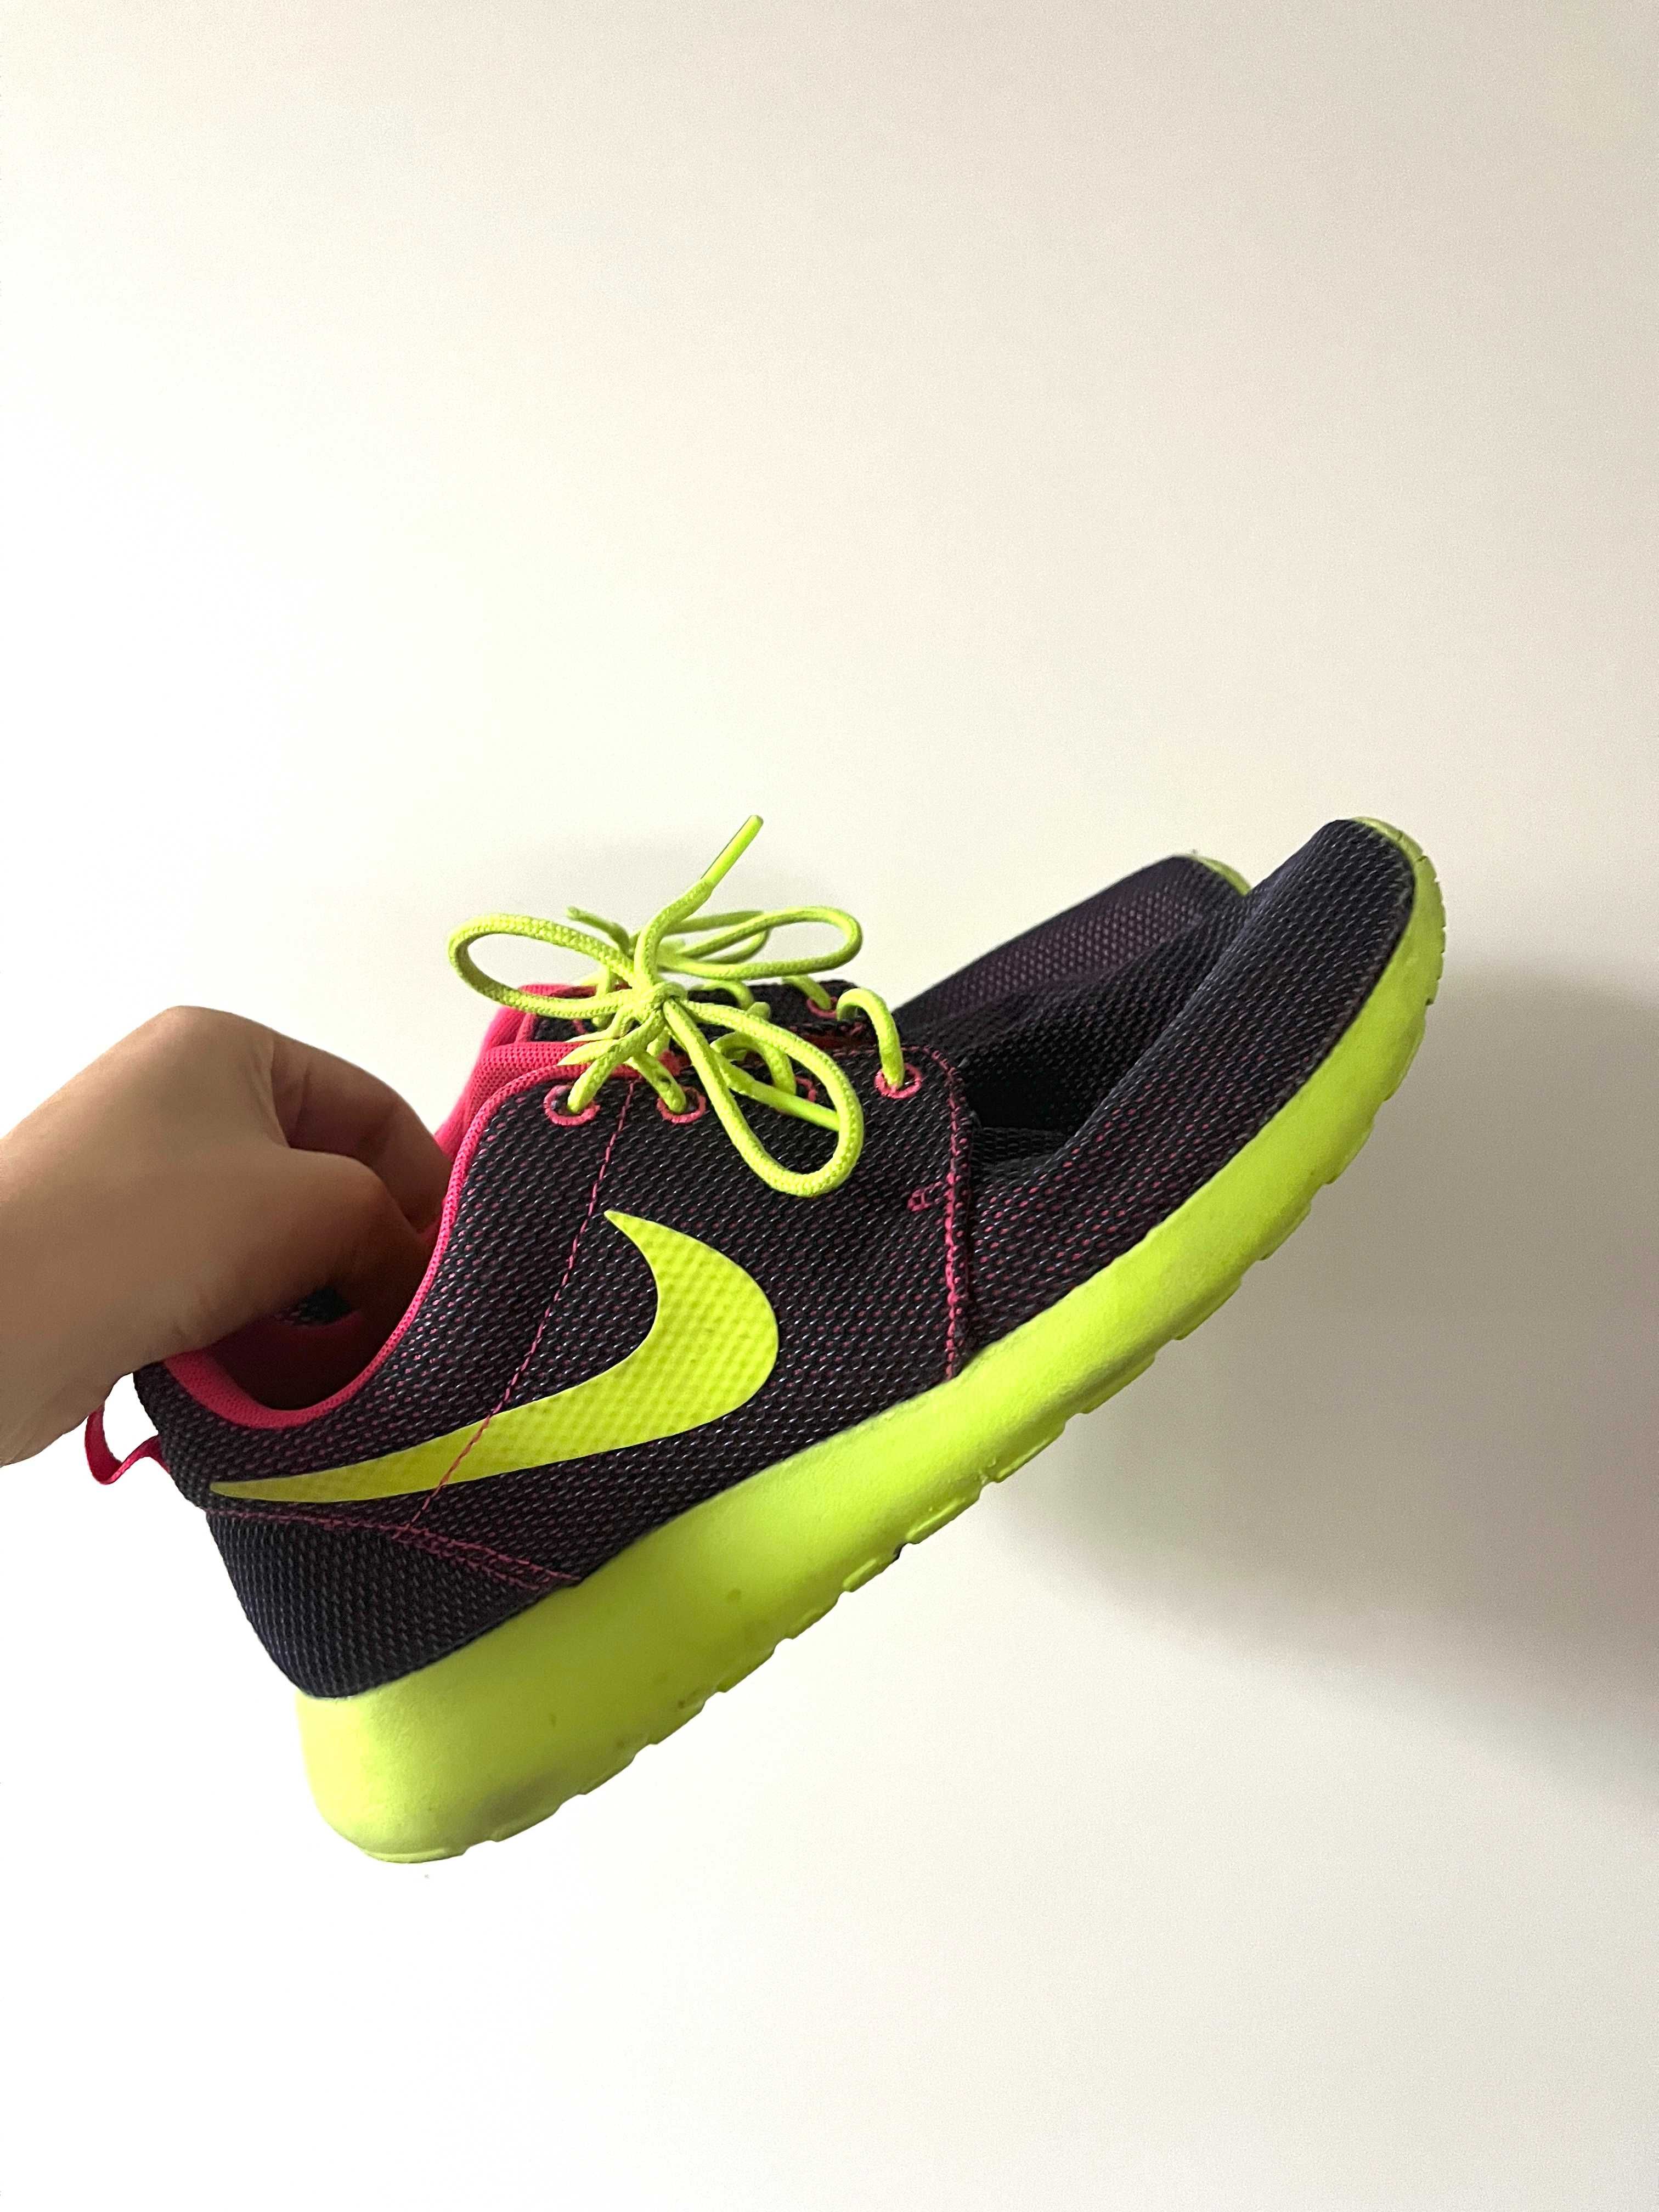 Kolorowe buty sportowe do biegania Nike roshe run rozmiar 39 Staszów •  OLX.pl